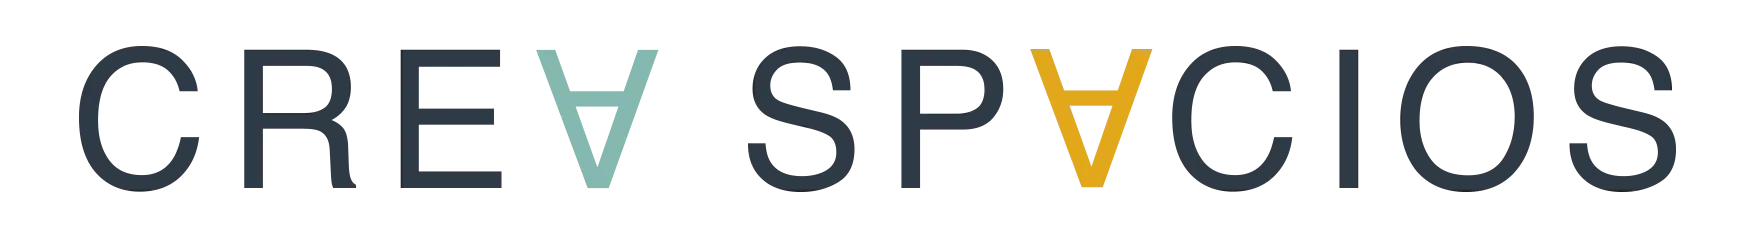 Logo Crea Spacios Horizontal